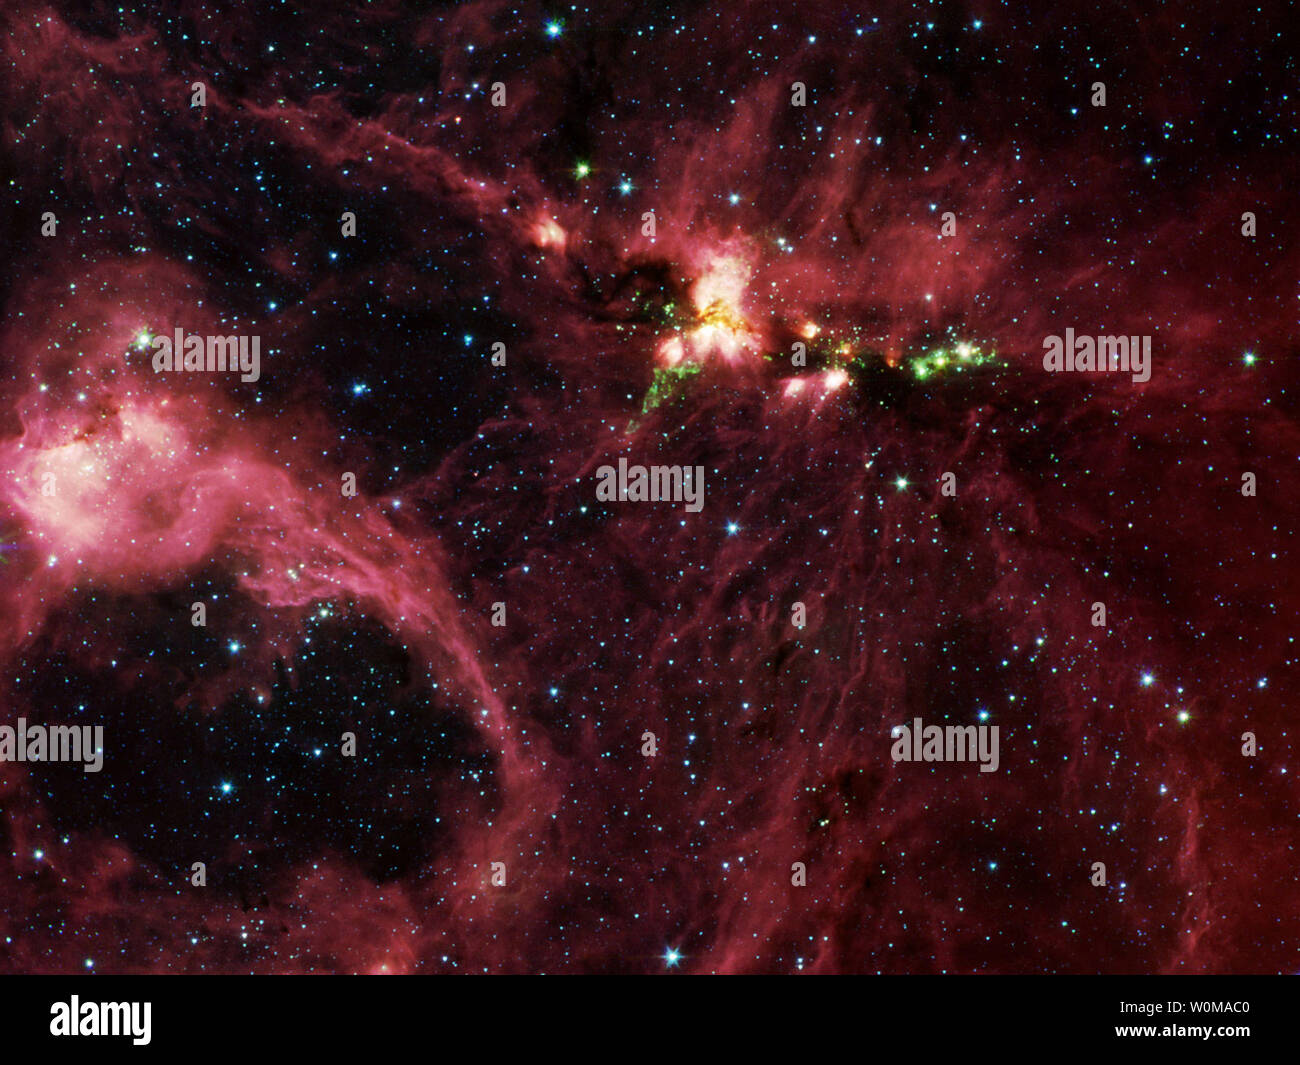 Cette image montre la NASA non datée pépinière stellaire nuage molécule DR21, vu depuis le télescope spatial infrarouge Spitzer, DR21 est entourée de tant d'espace qu'aucune poussière s'échappe de la lumière visible. (UPI Photo/NASA/JPL/Caltech) Banque D'Images